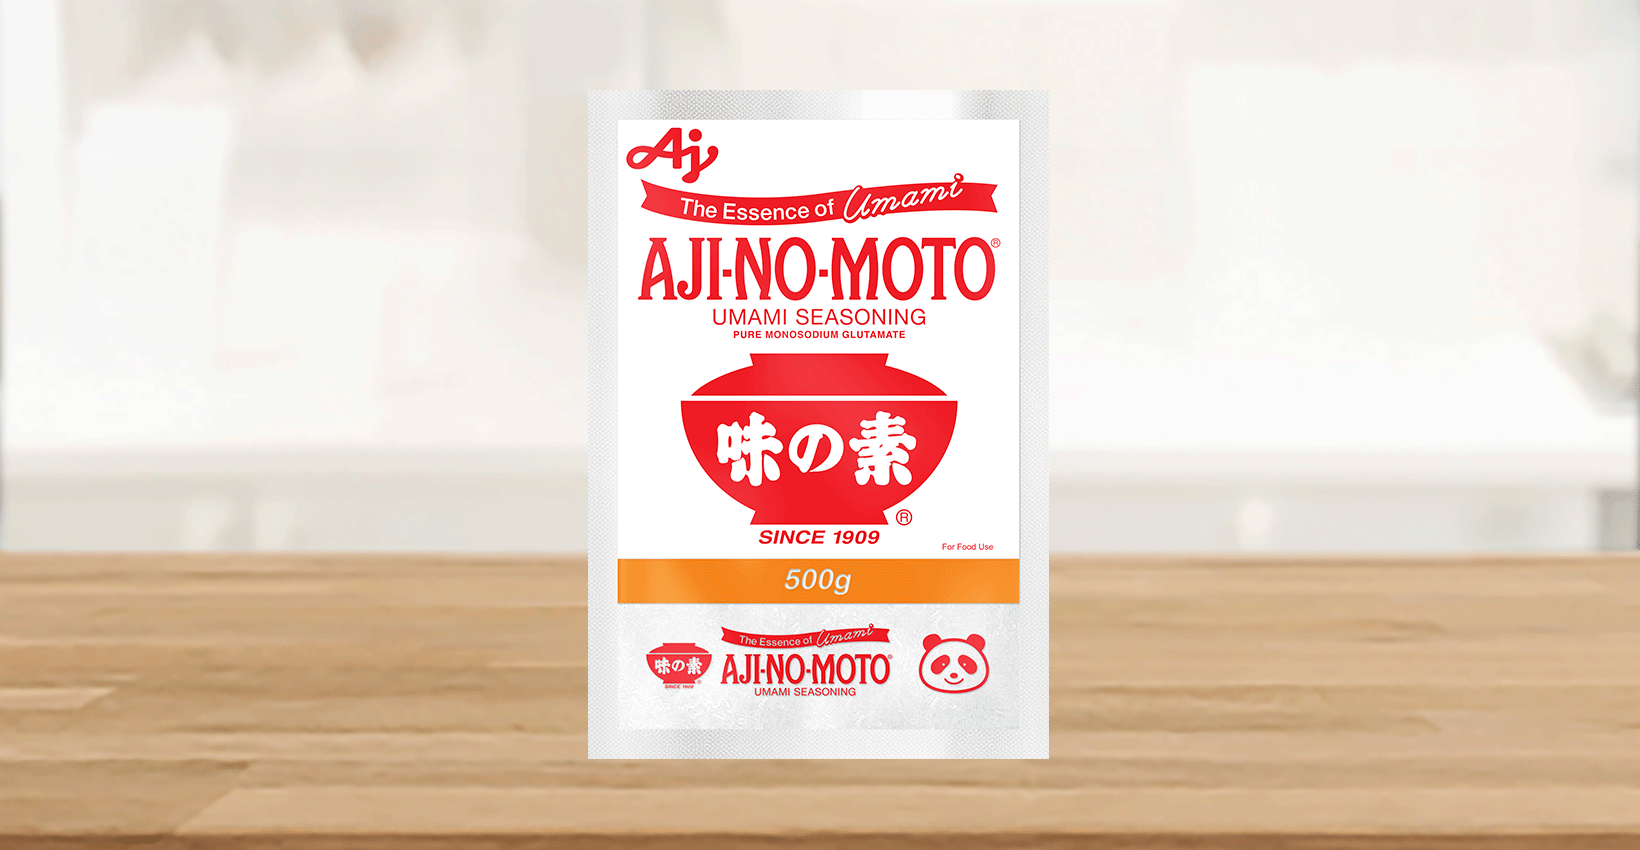 ajinomoto umami seasoning taktak 500g